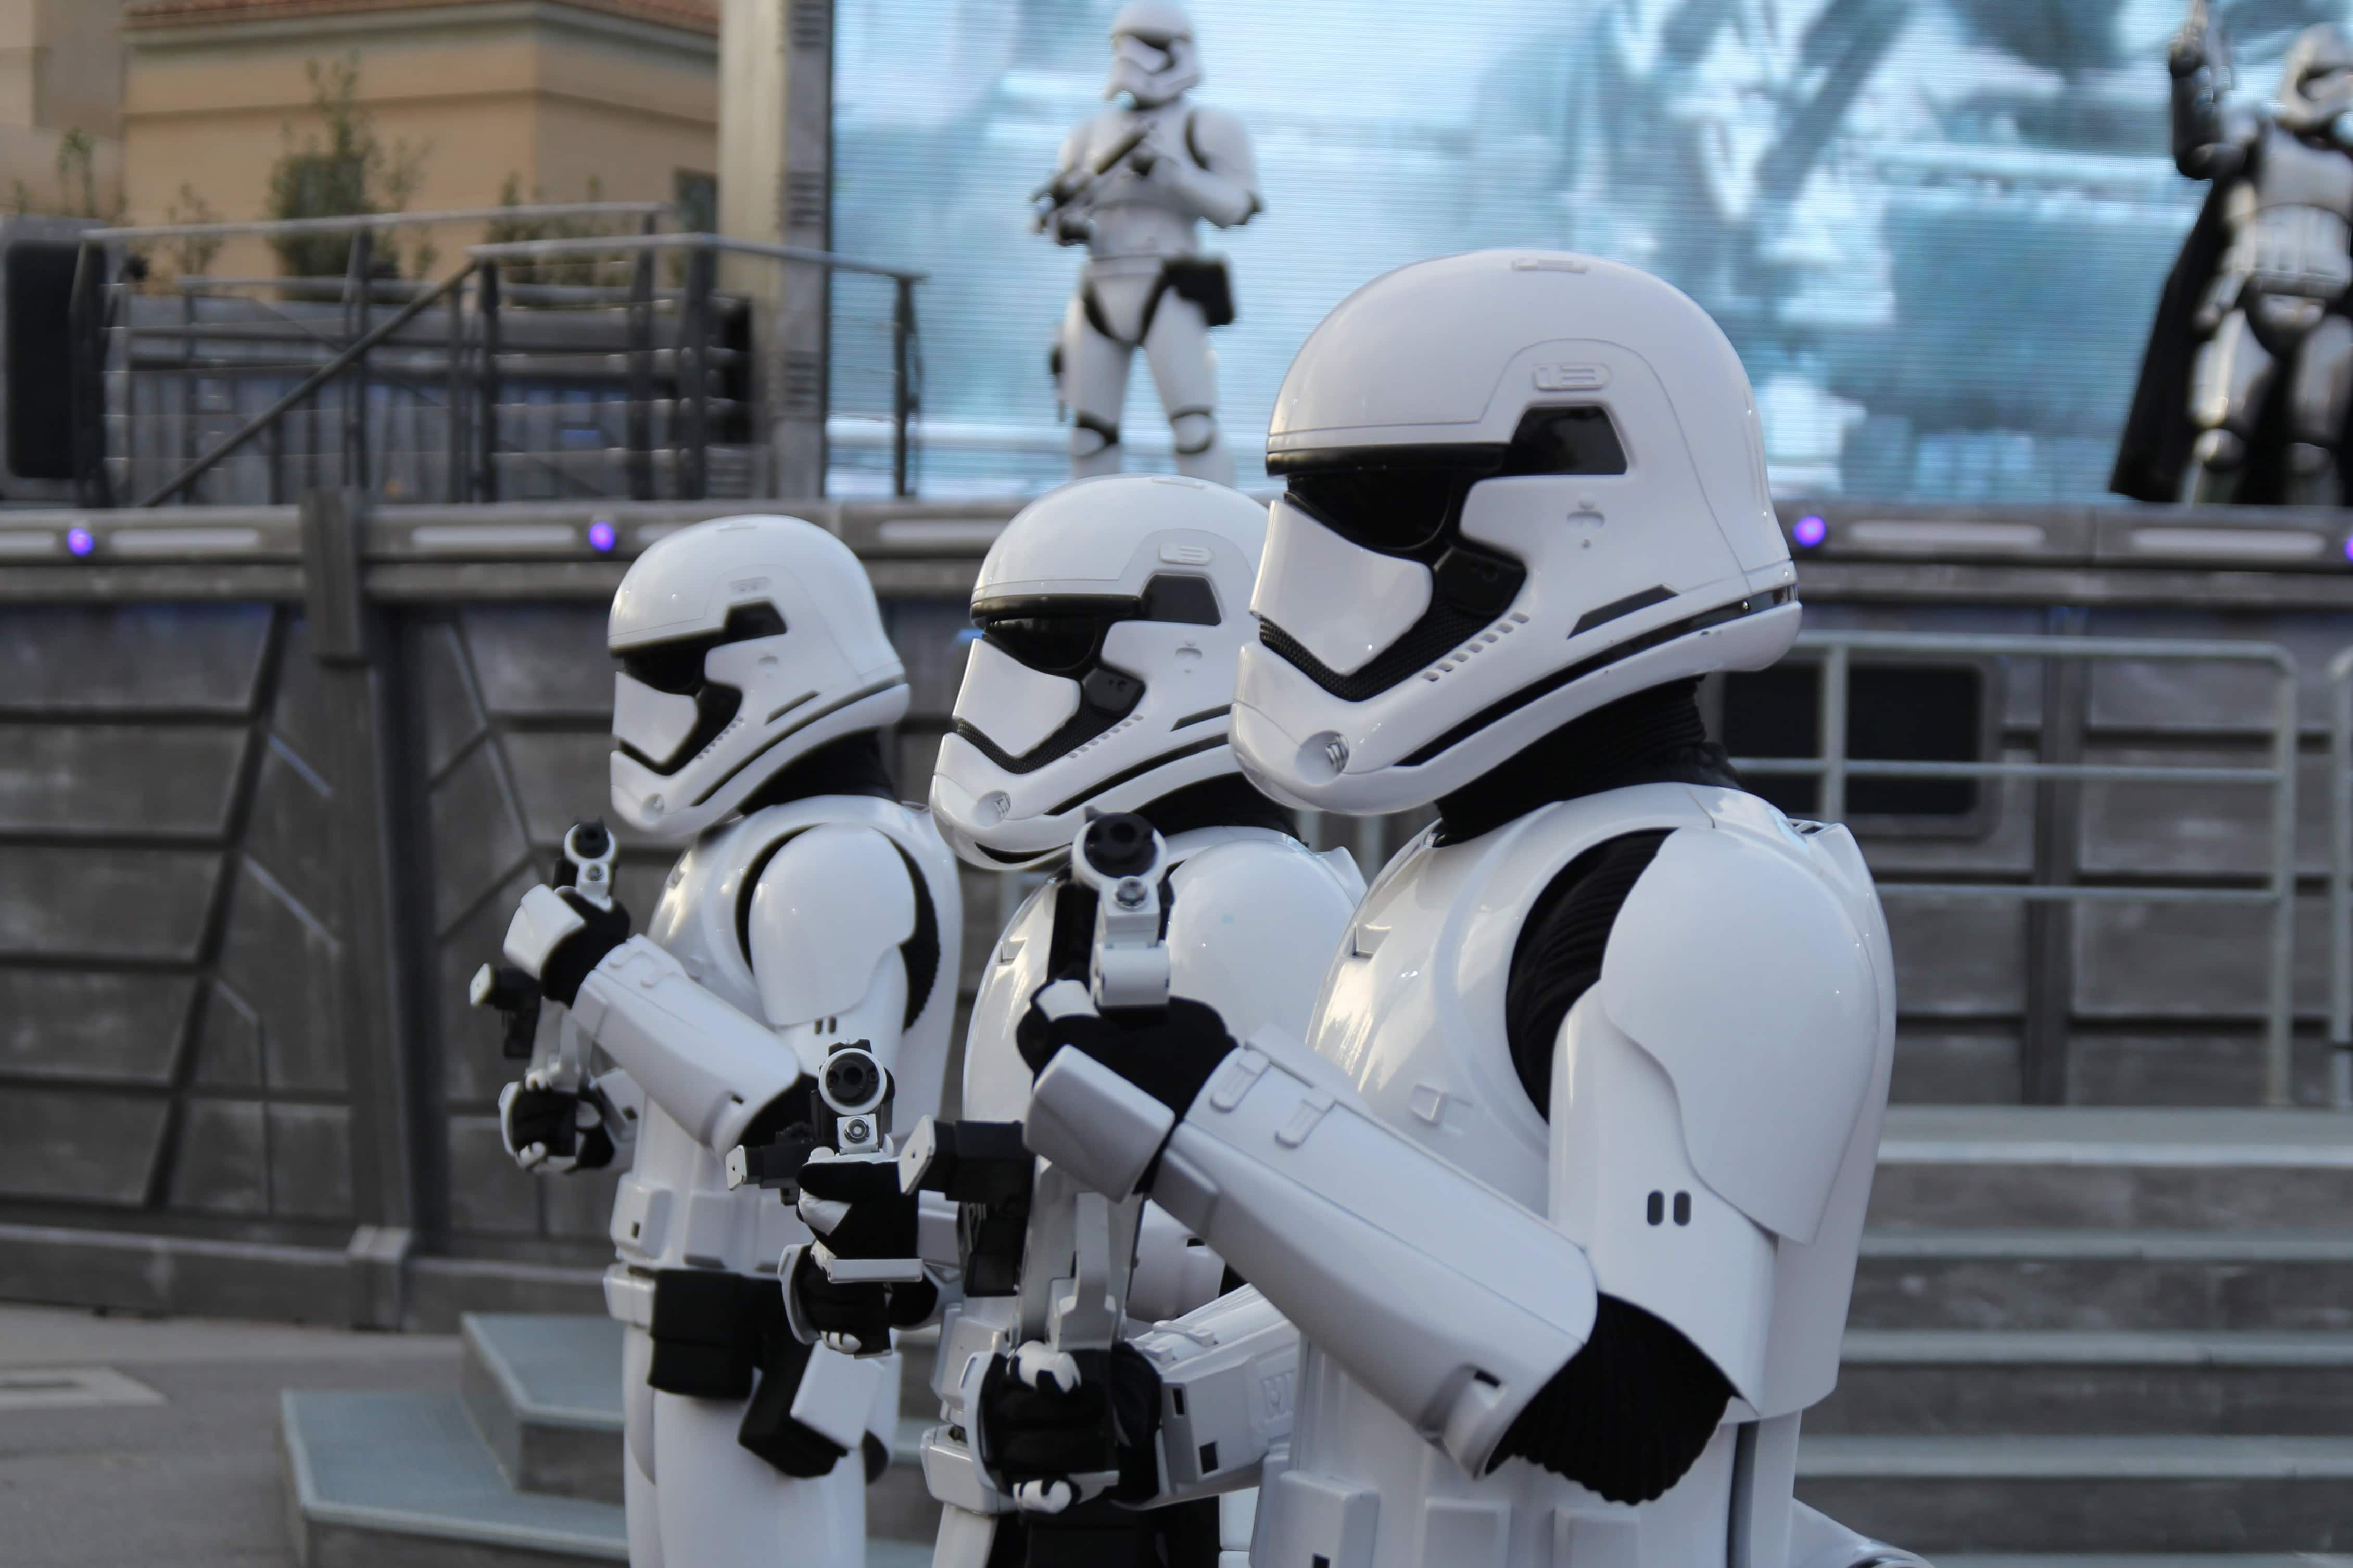 Disneyland Paris - Season of the Force 2018 - Stormtroopers